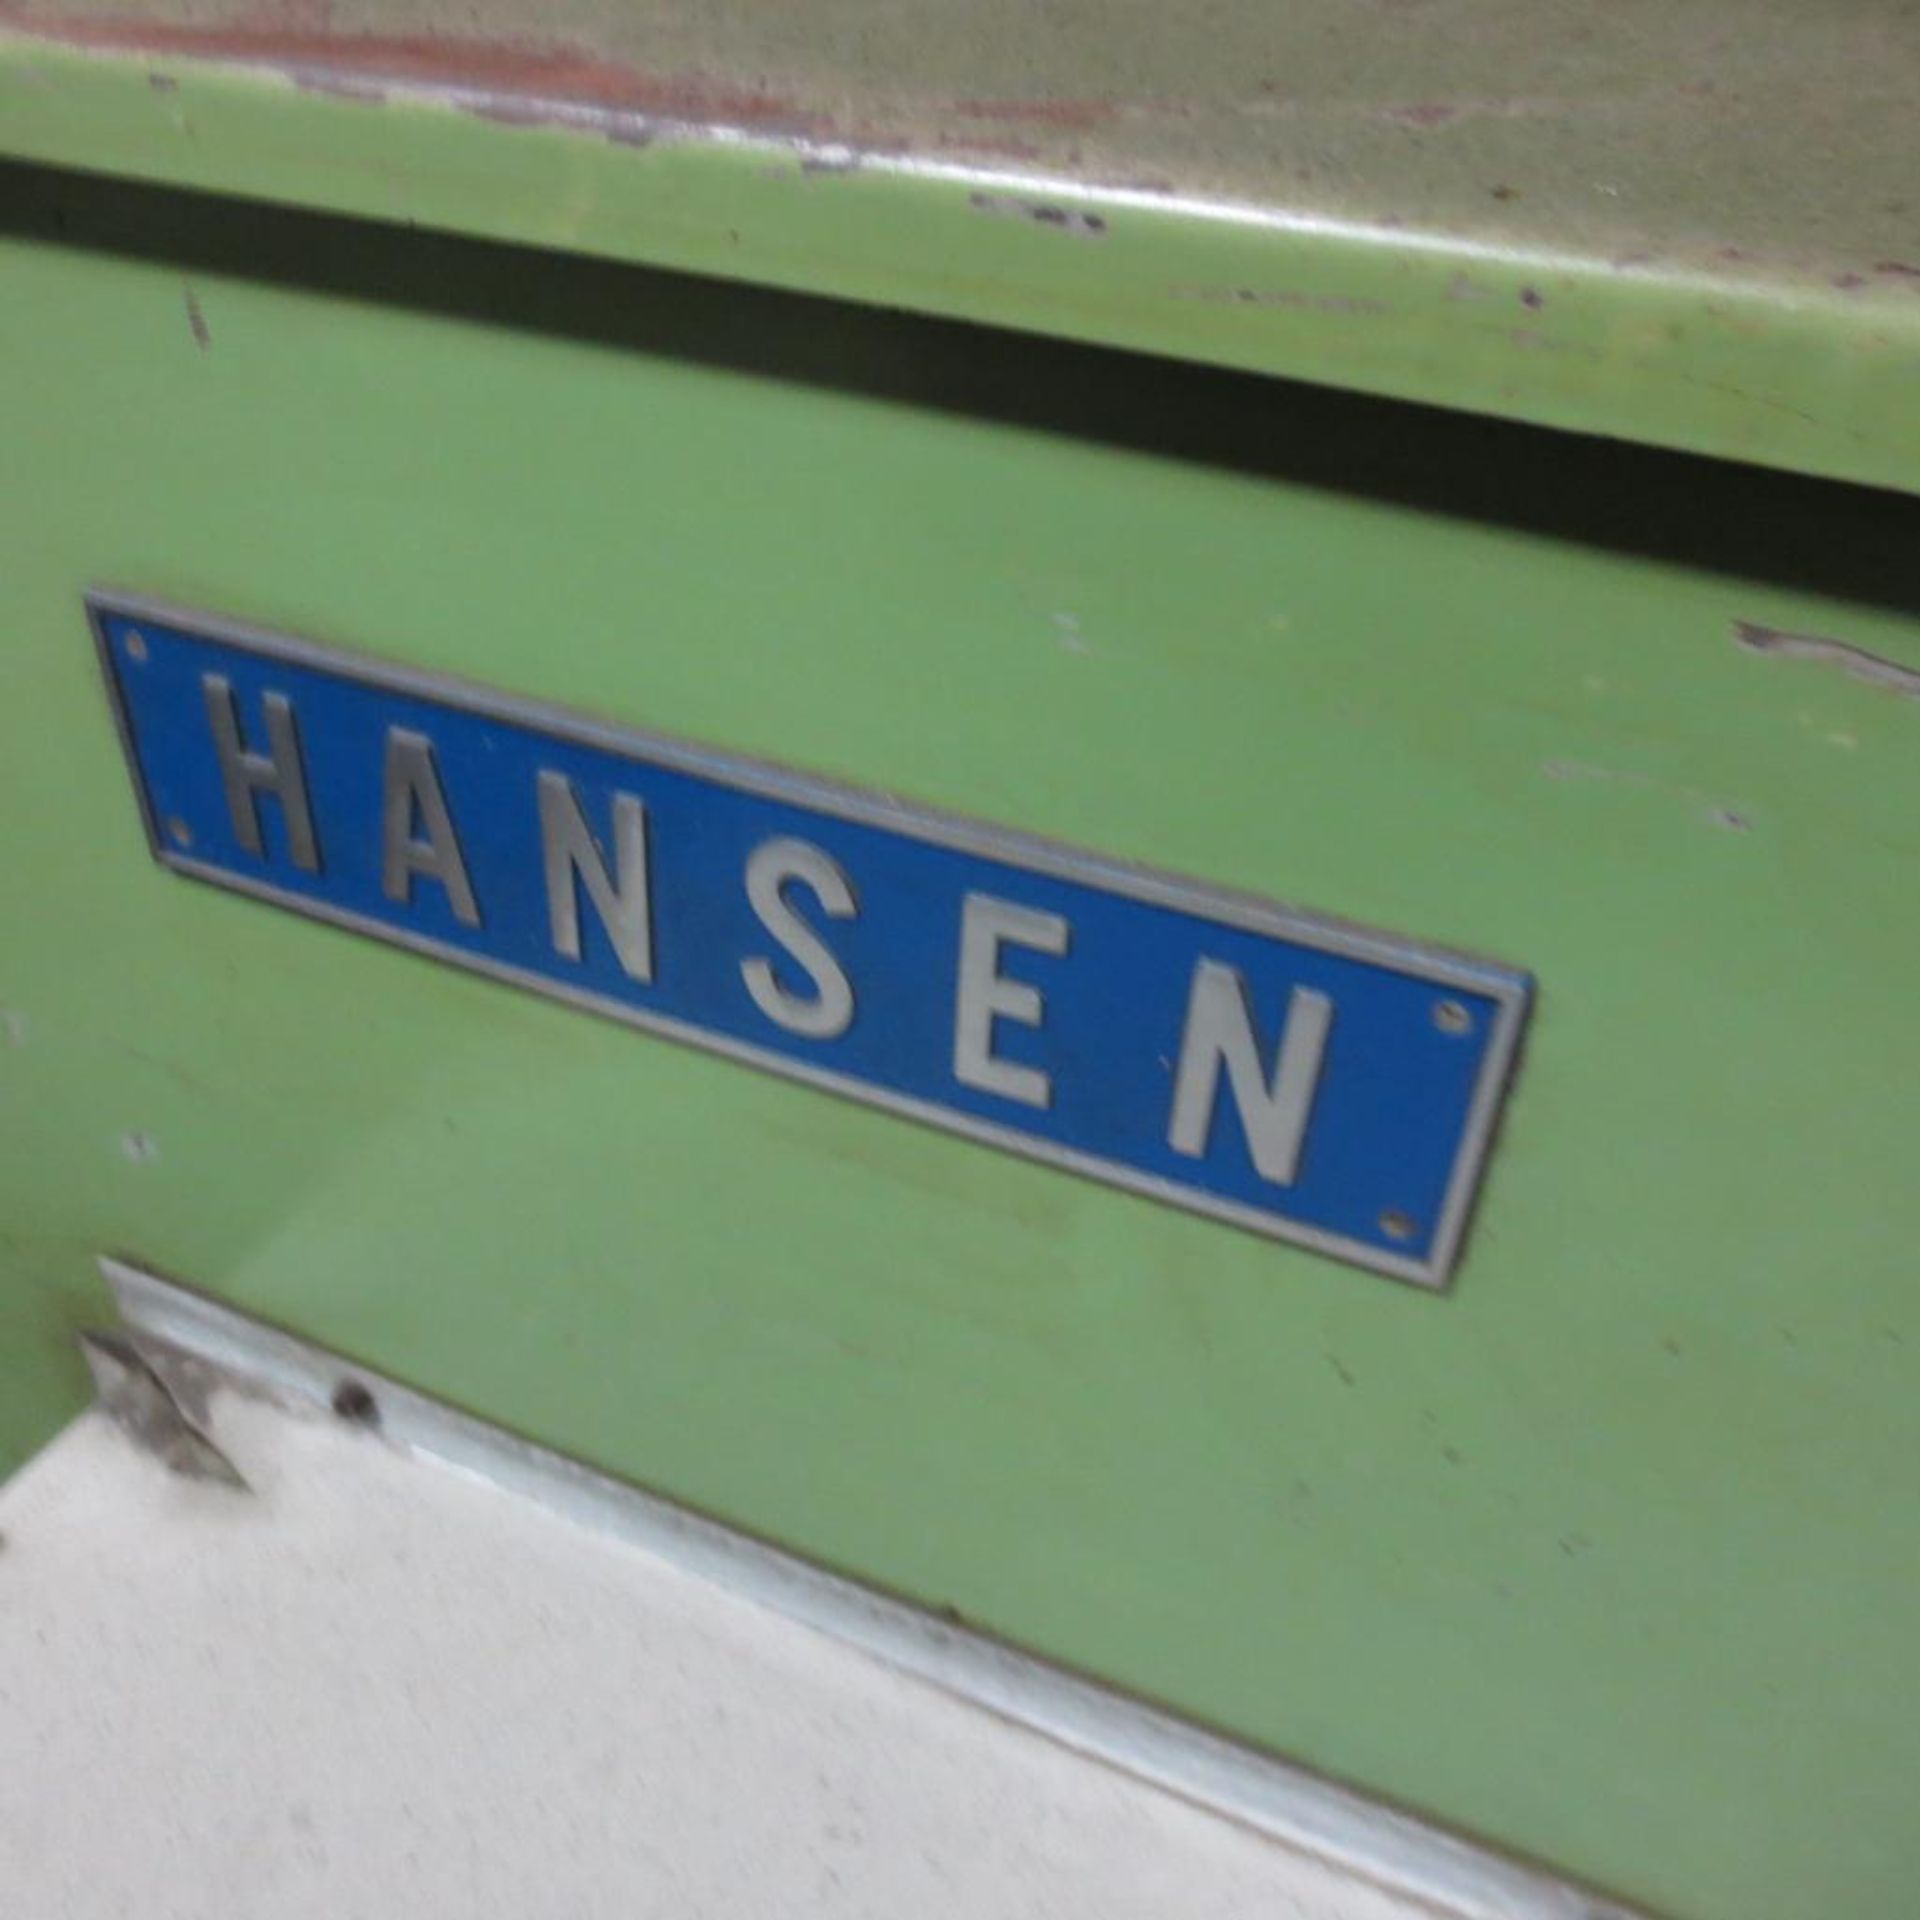 Hansen Chiller. Loading Fee is $20.00 - Image 2 of 3